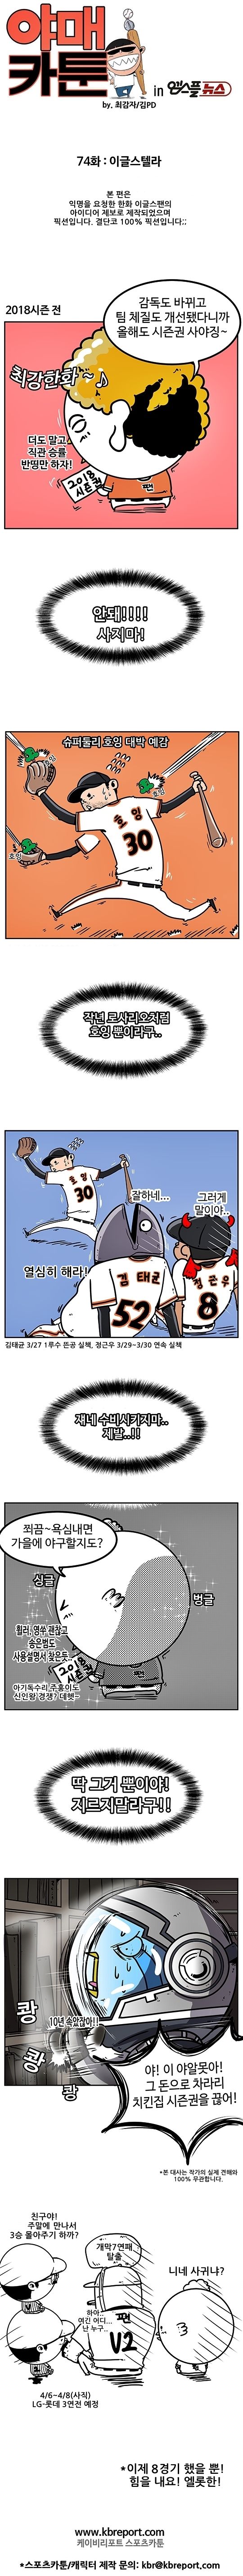 출처: [KBO 야매카툰] 한화 '보살팬'과 인터스텔라 (Feat. 픽션)